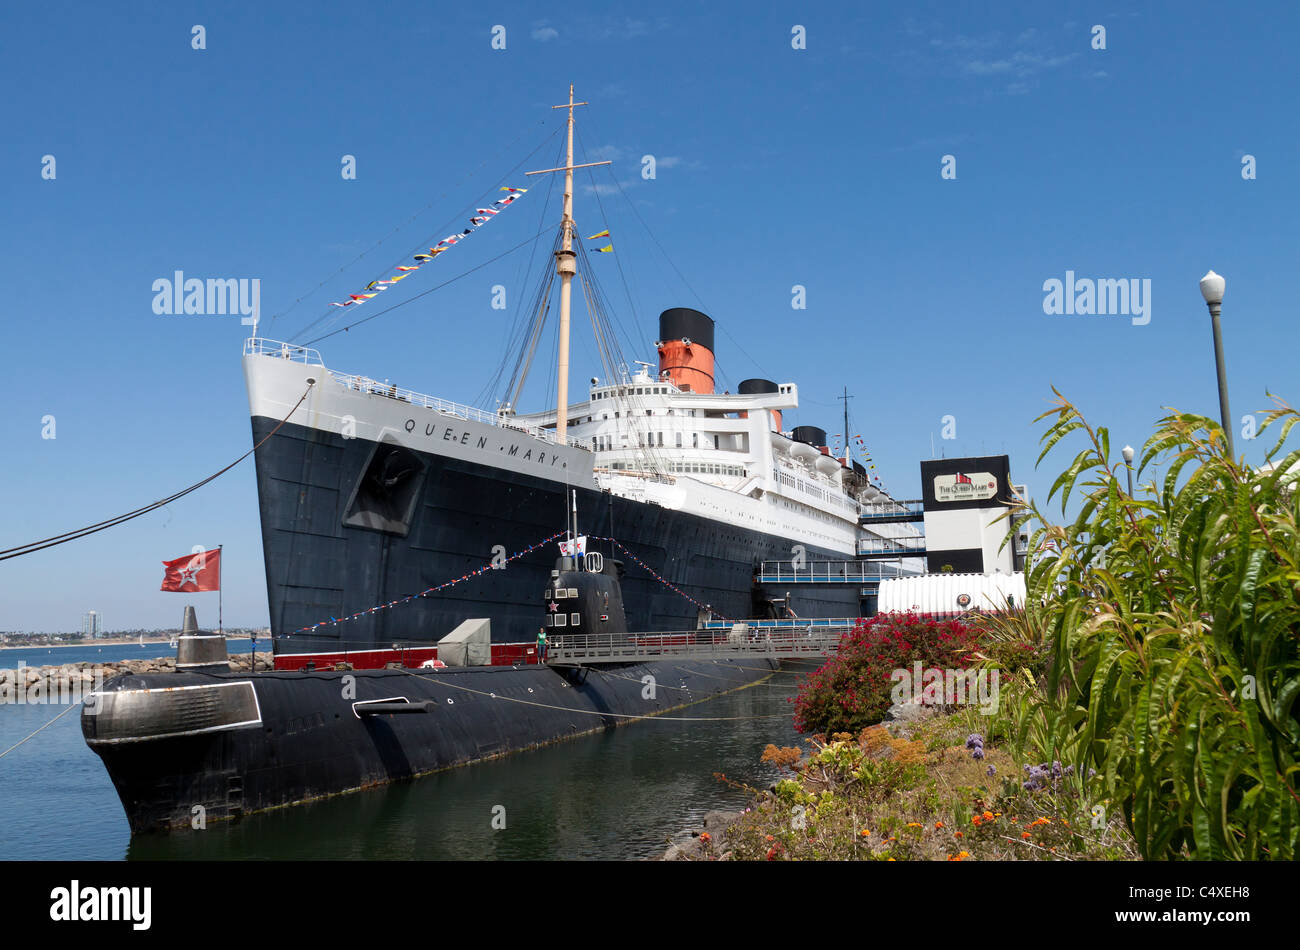 La Queen Mary DOCK navi da crociera lato nella lunga spiaggia del porto con sottomarino russo in primo piano Foto Stock